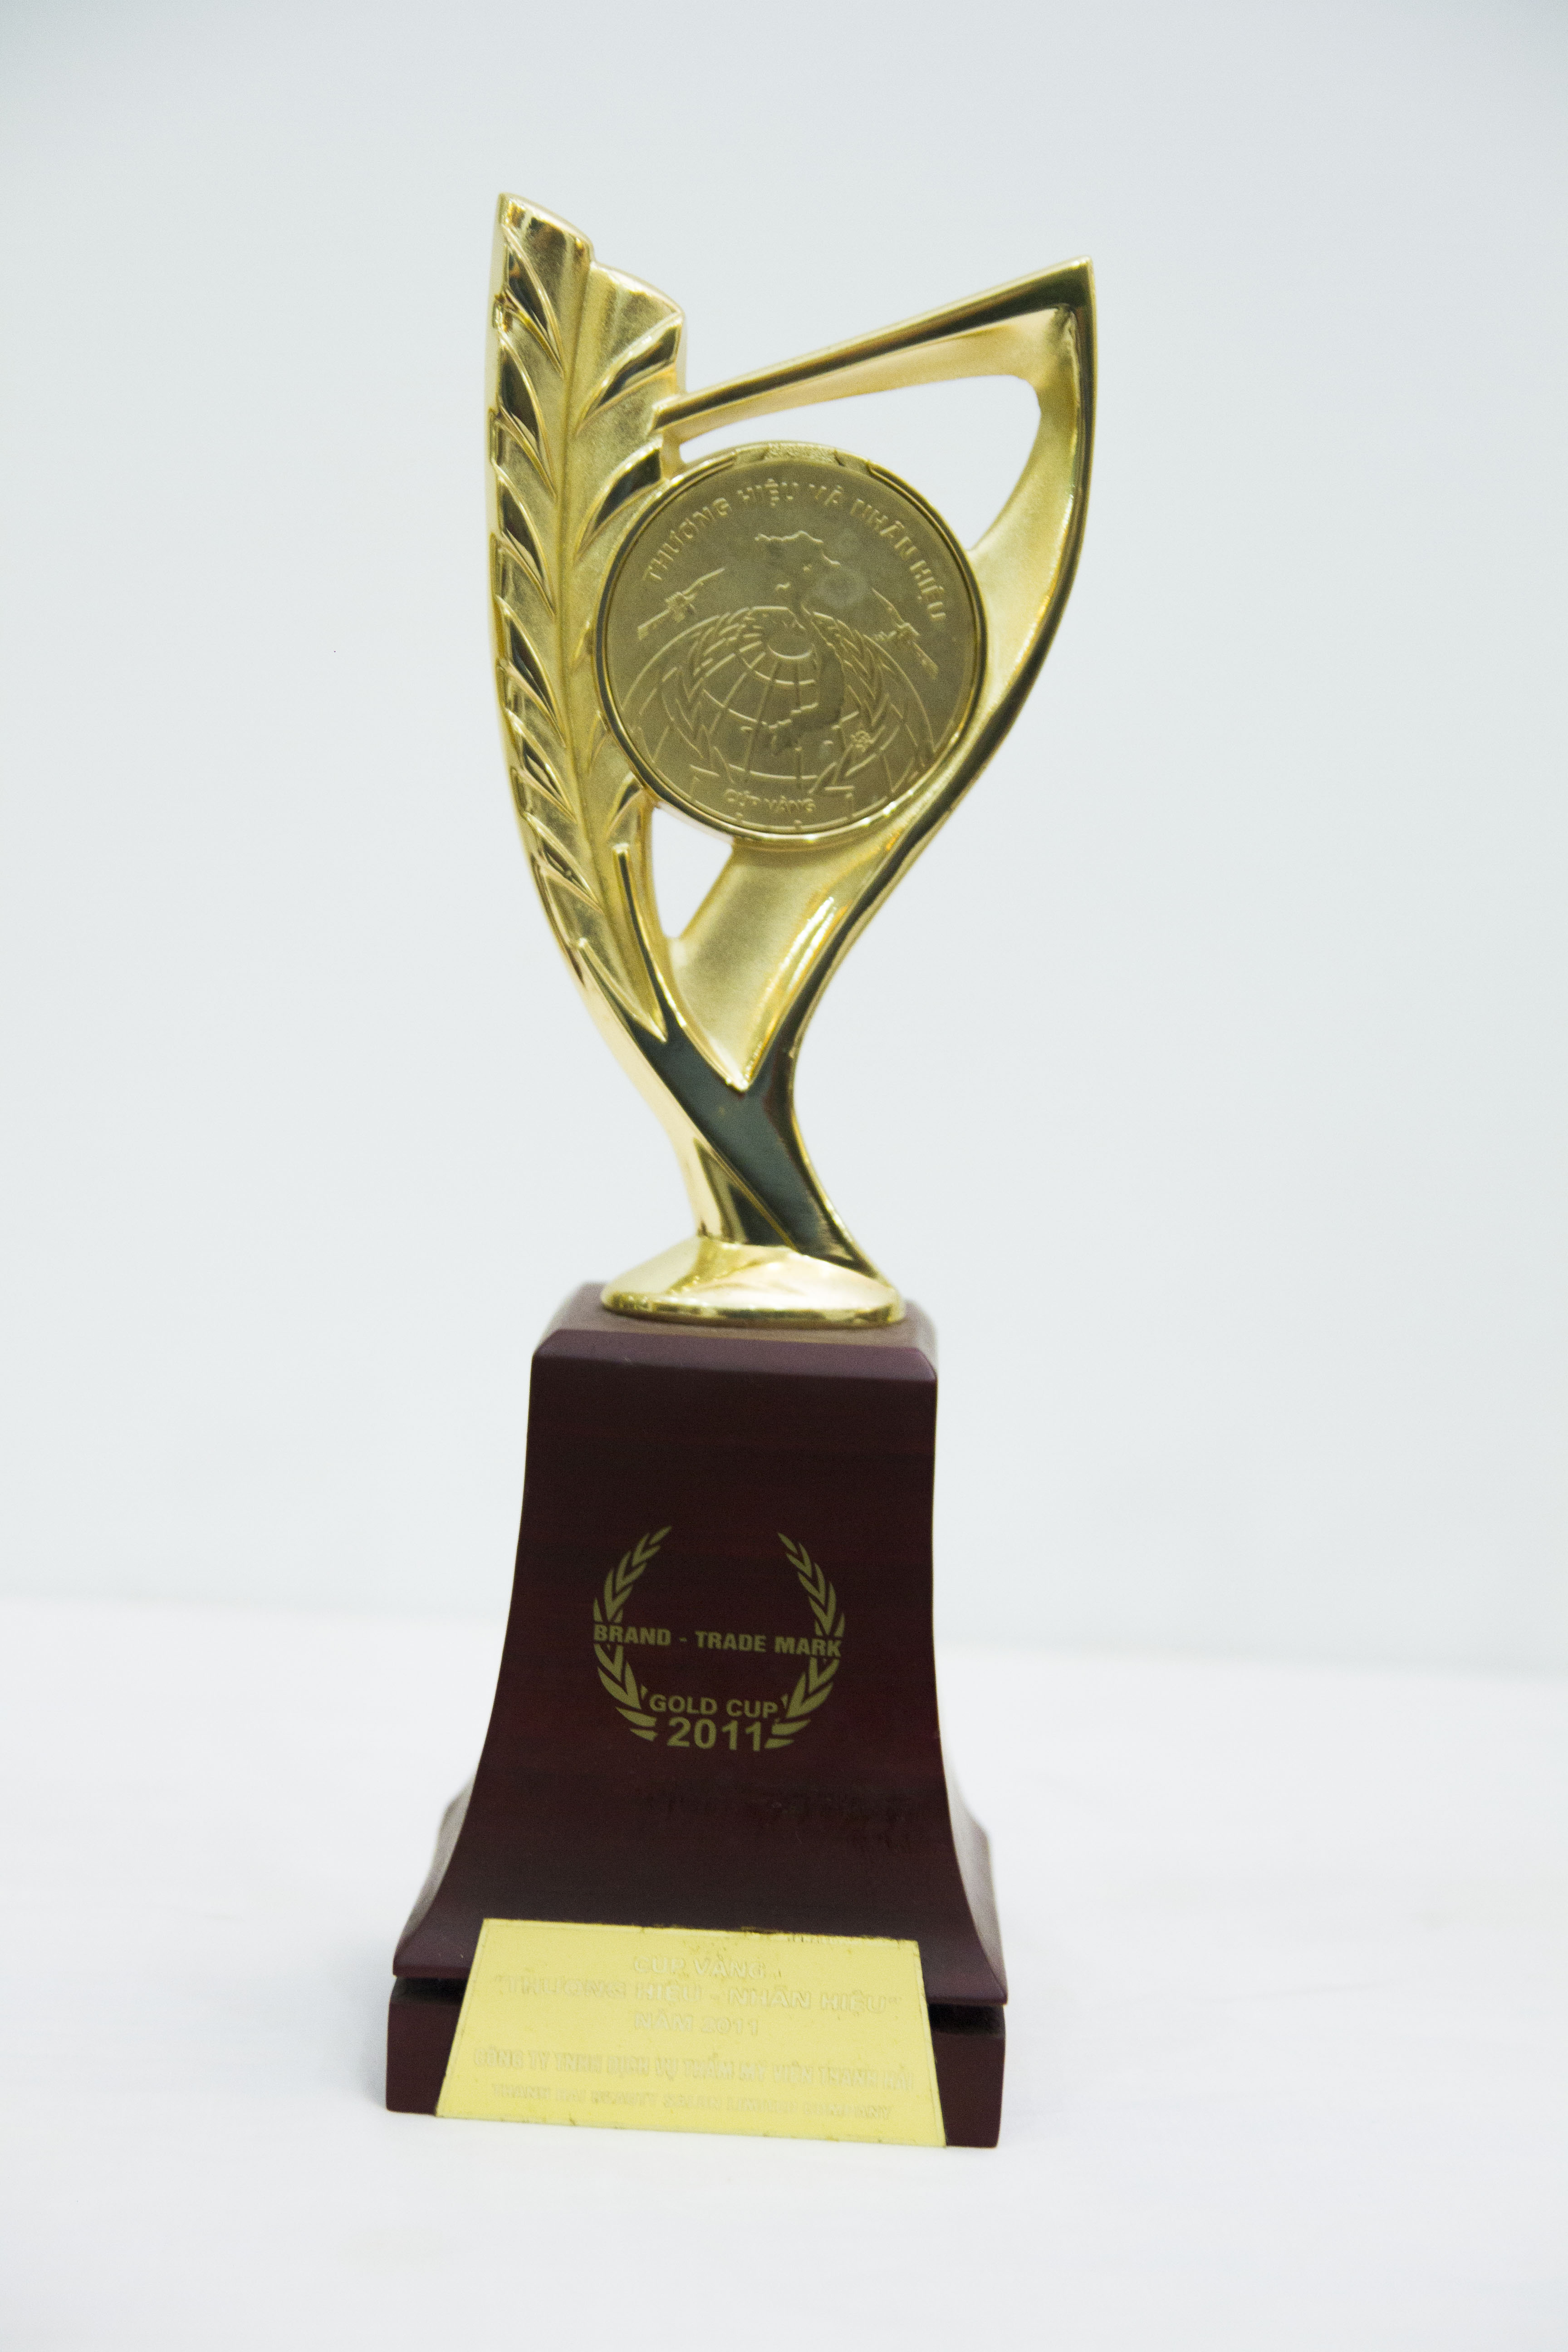 Năm 2011 Giải thưởng vì sự phát triển cộng đồng asean - cúp vàng thương hiệu nhãn hiệu